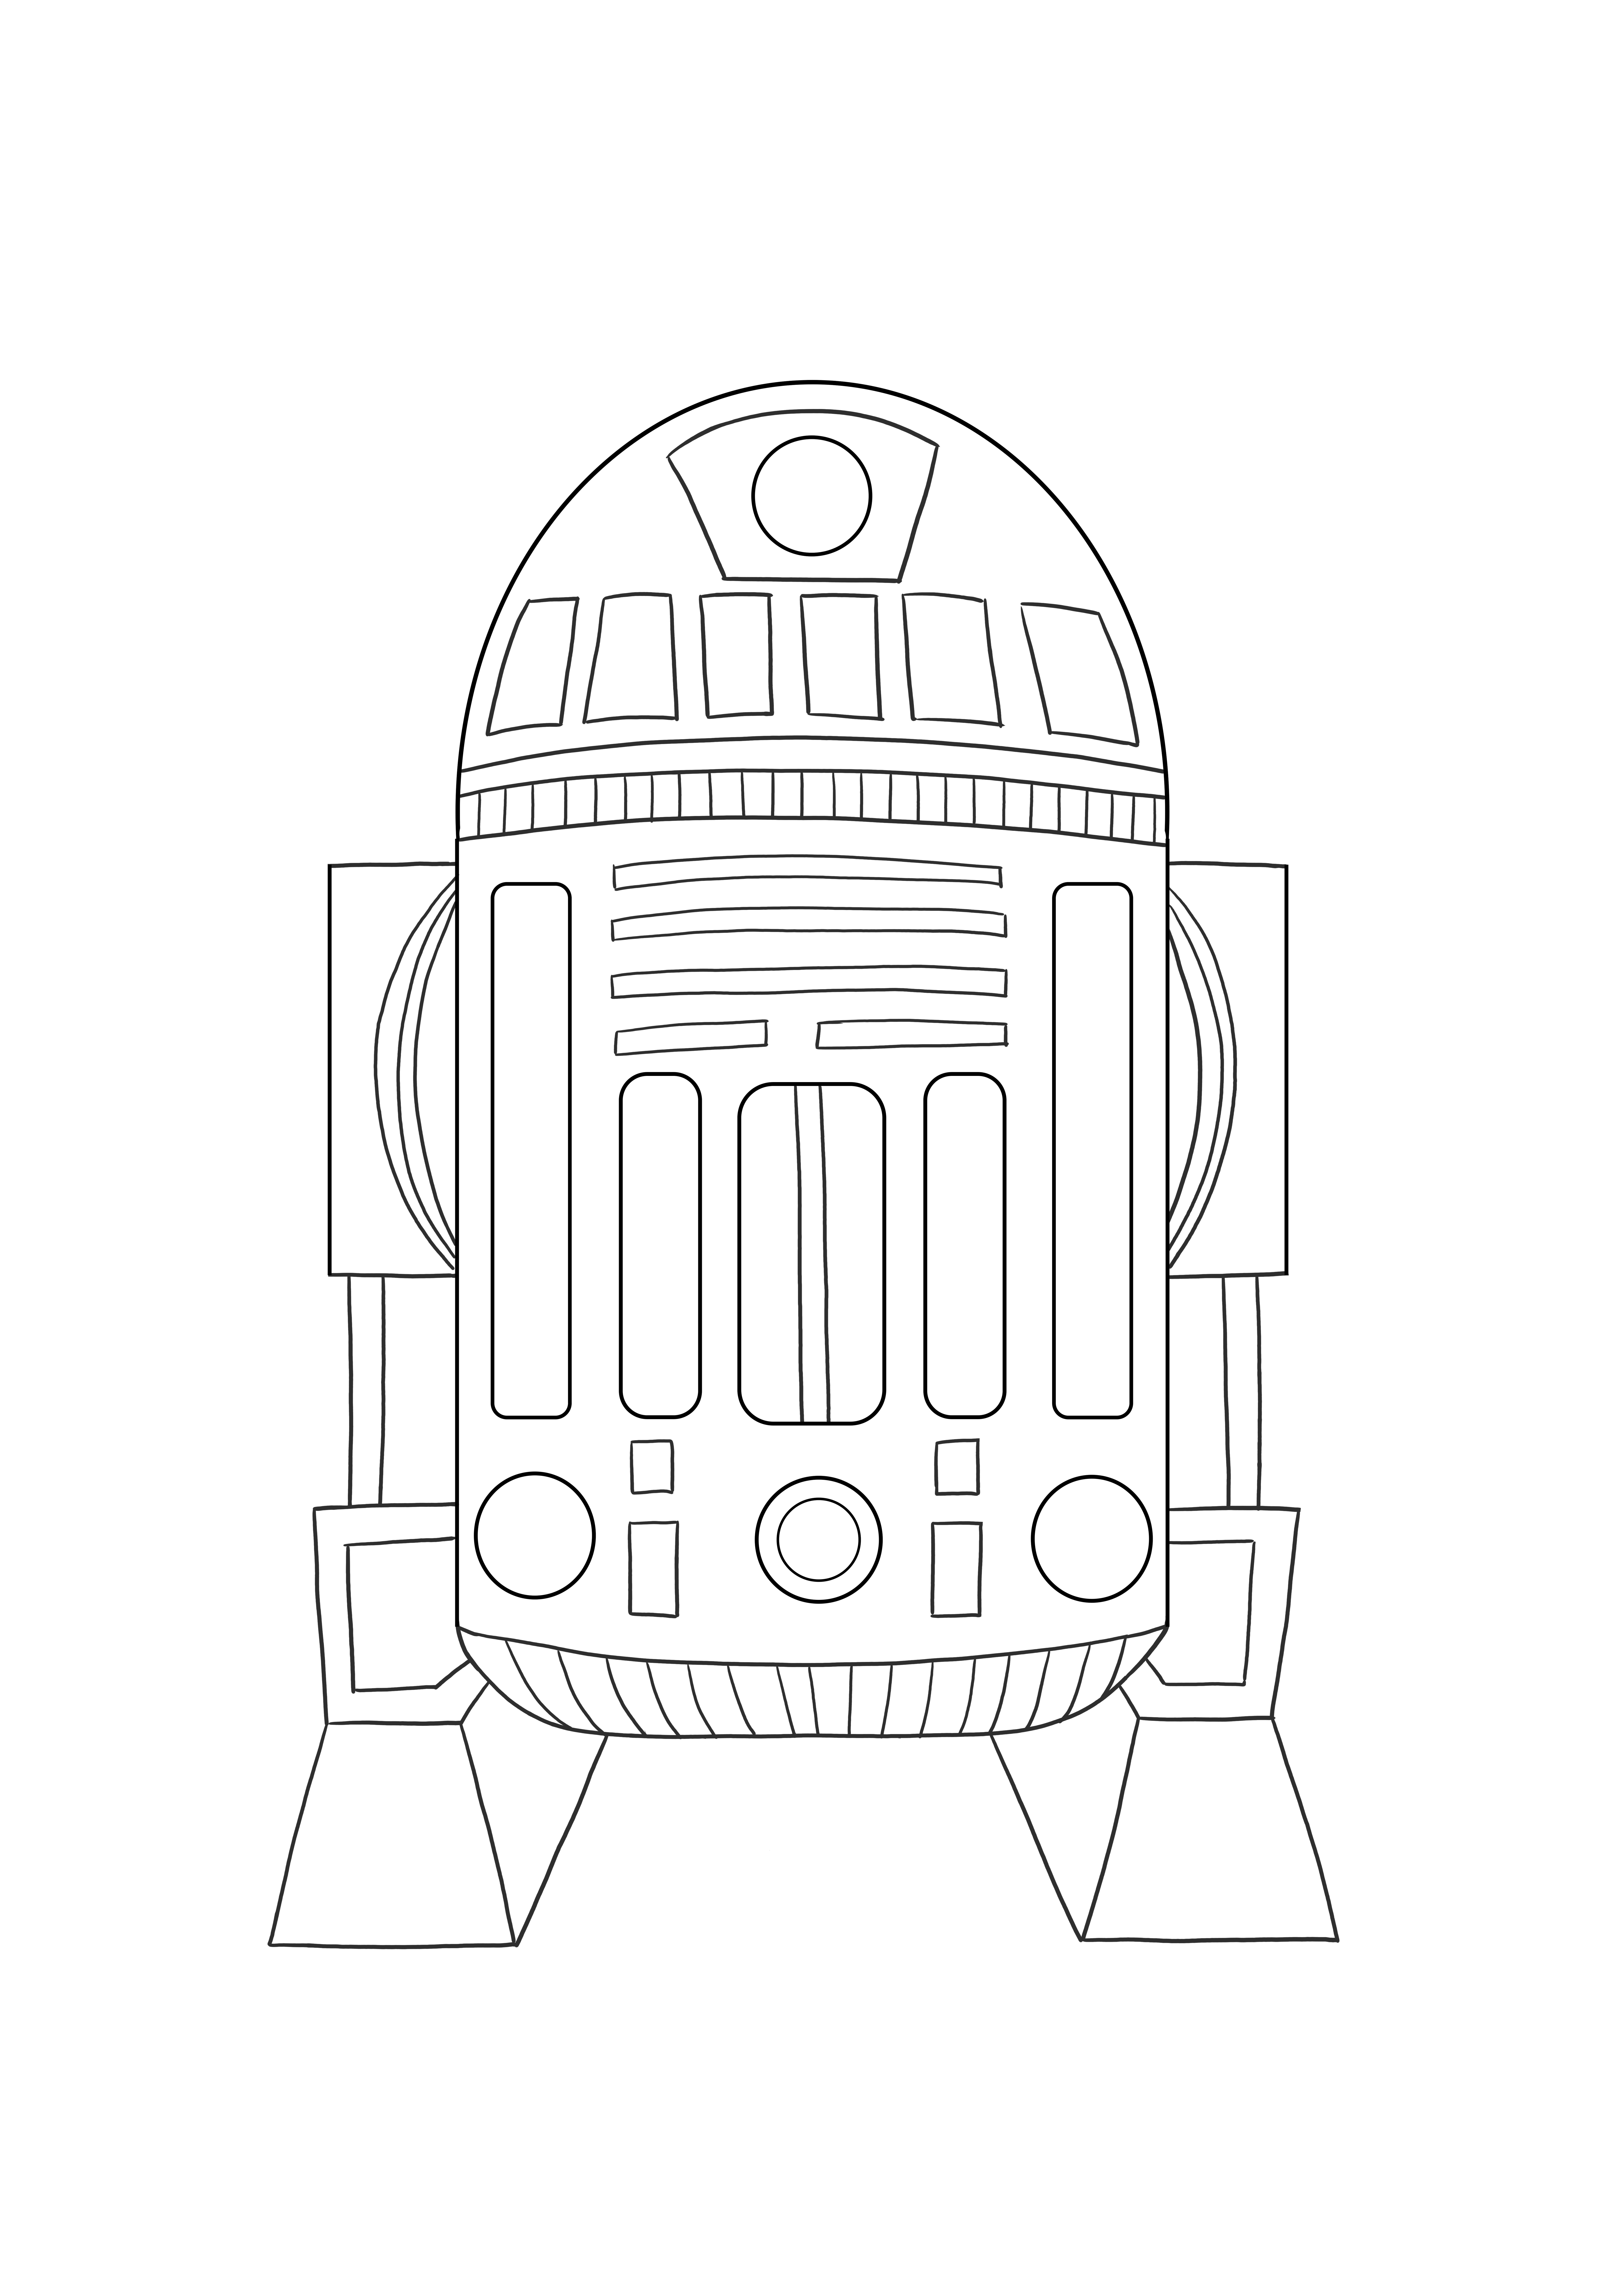 アストロメッド・ドロイド R2 無料で印刷可能な子供向けのカラー画像